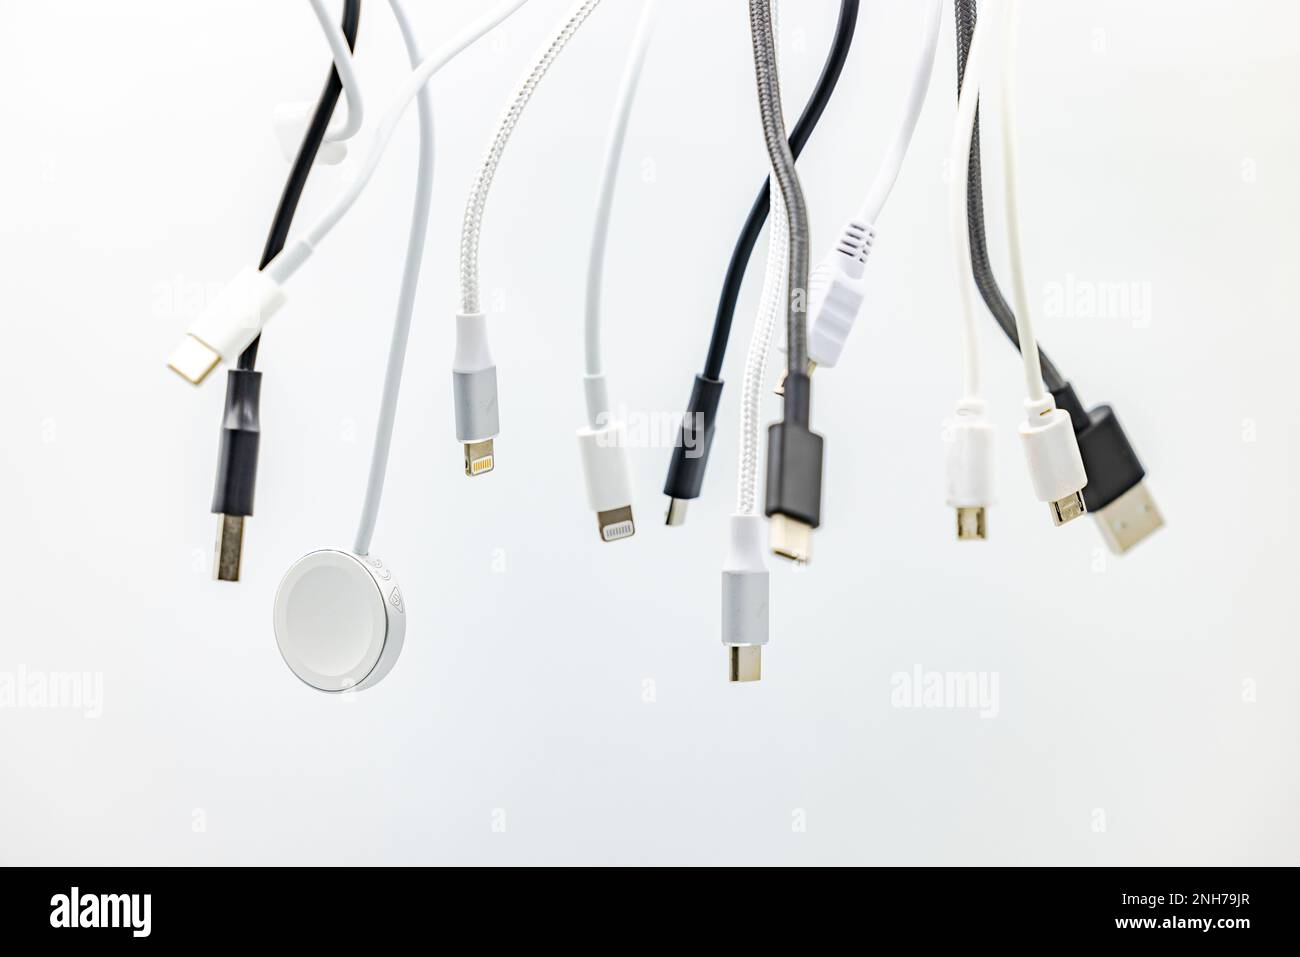 Un enchevêtrement de fiches, de prises et de câbles USB exposé dans le studio sur un arrière-plan blanc Banque D'Images